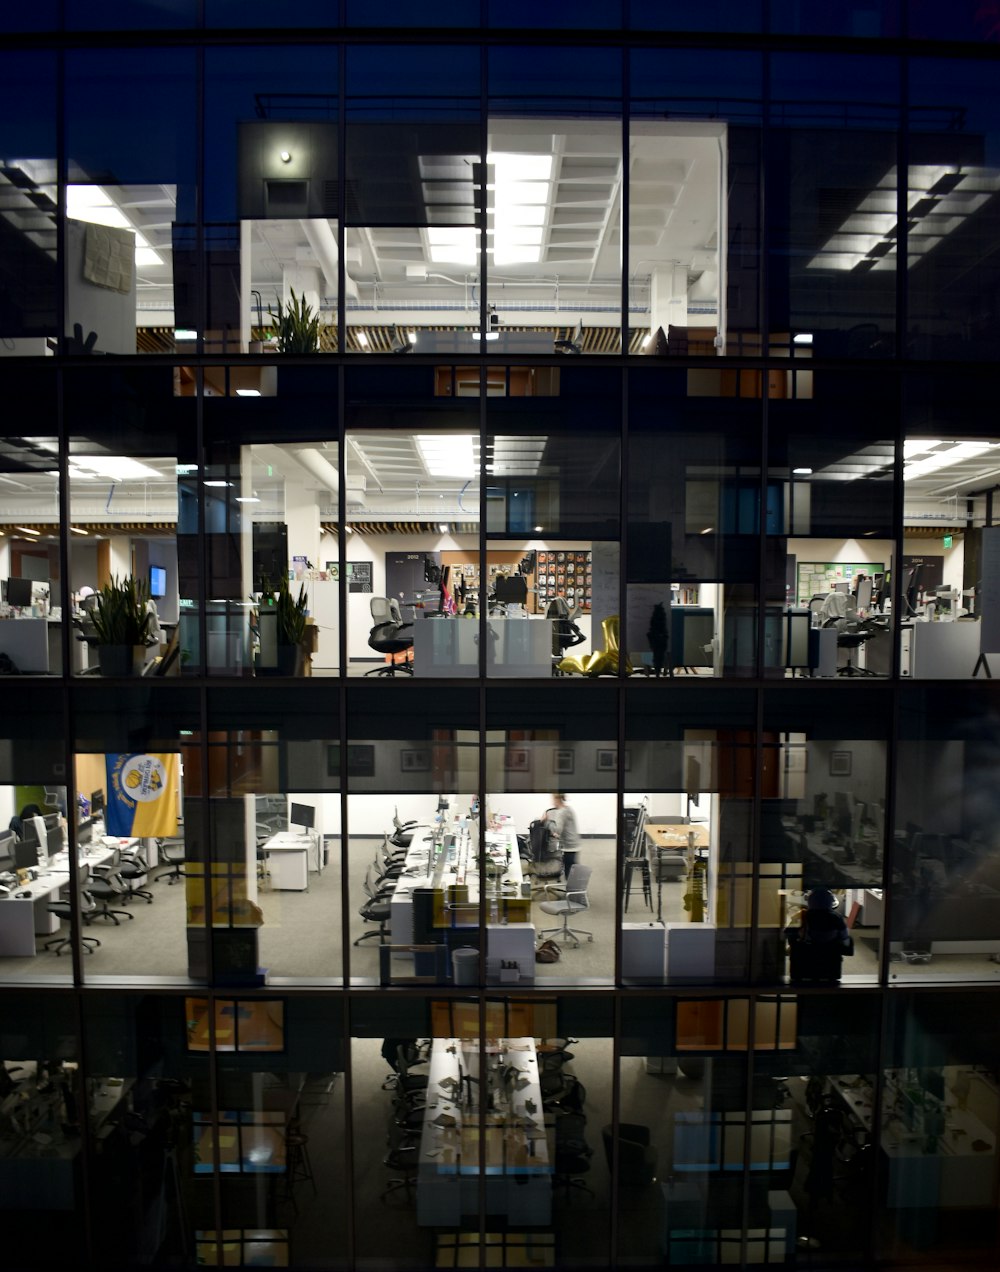 Un edificio de oficinas se ilumina por la noche